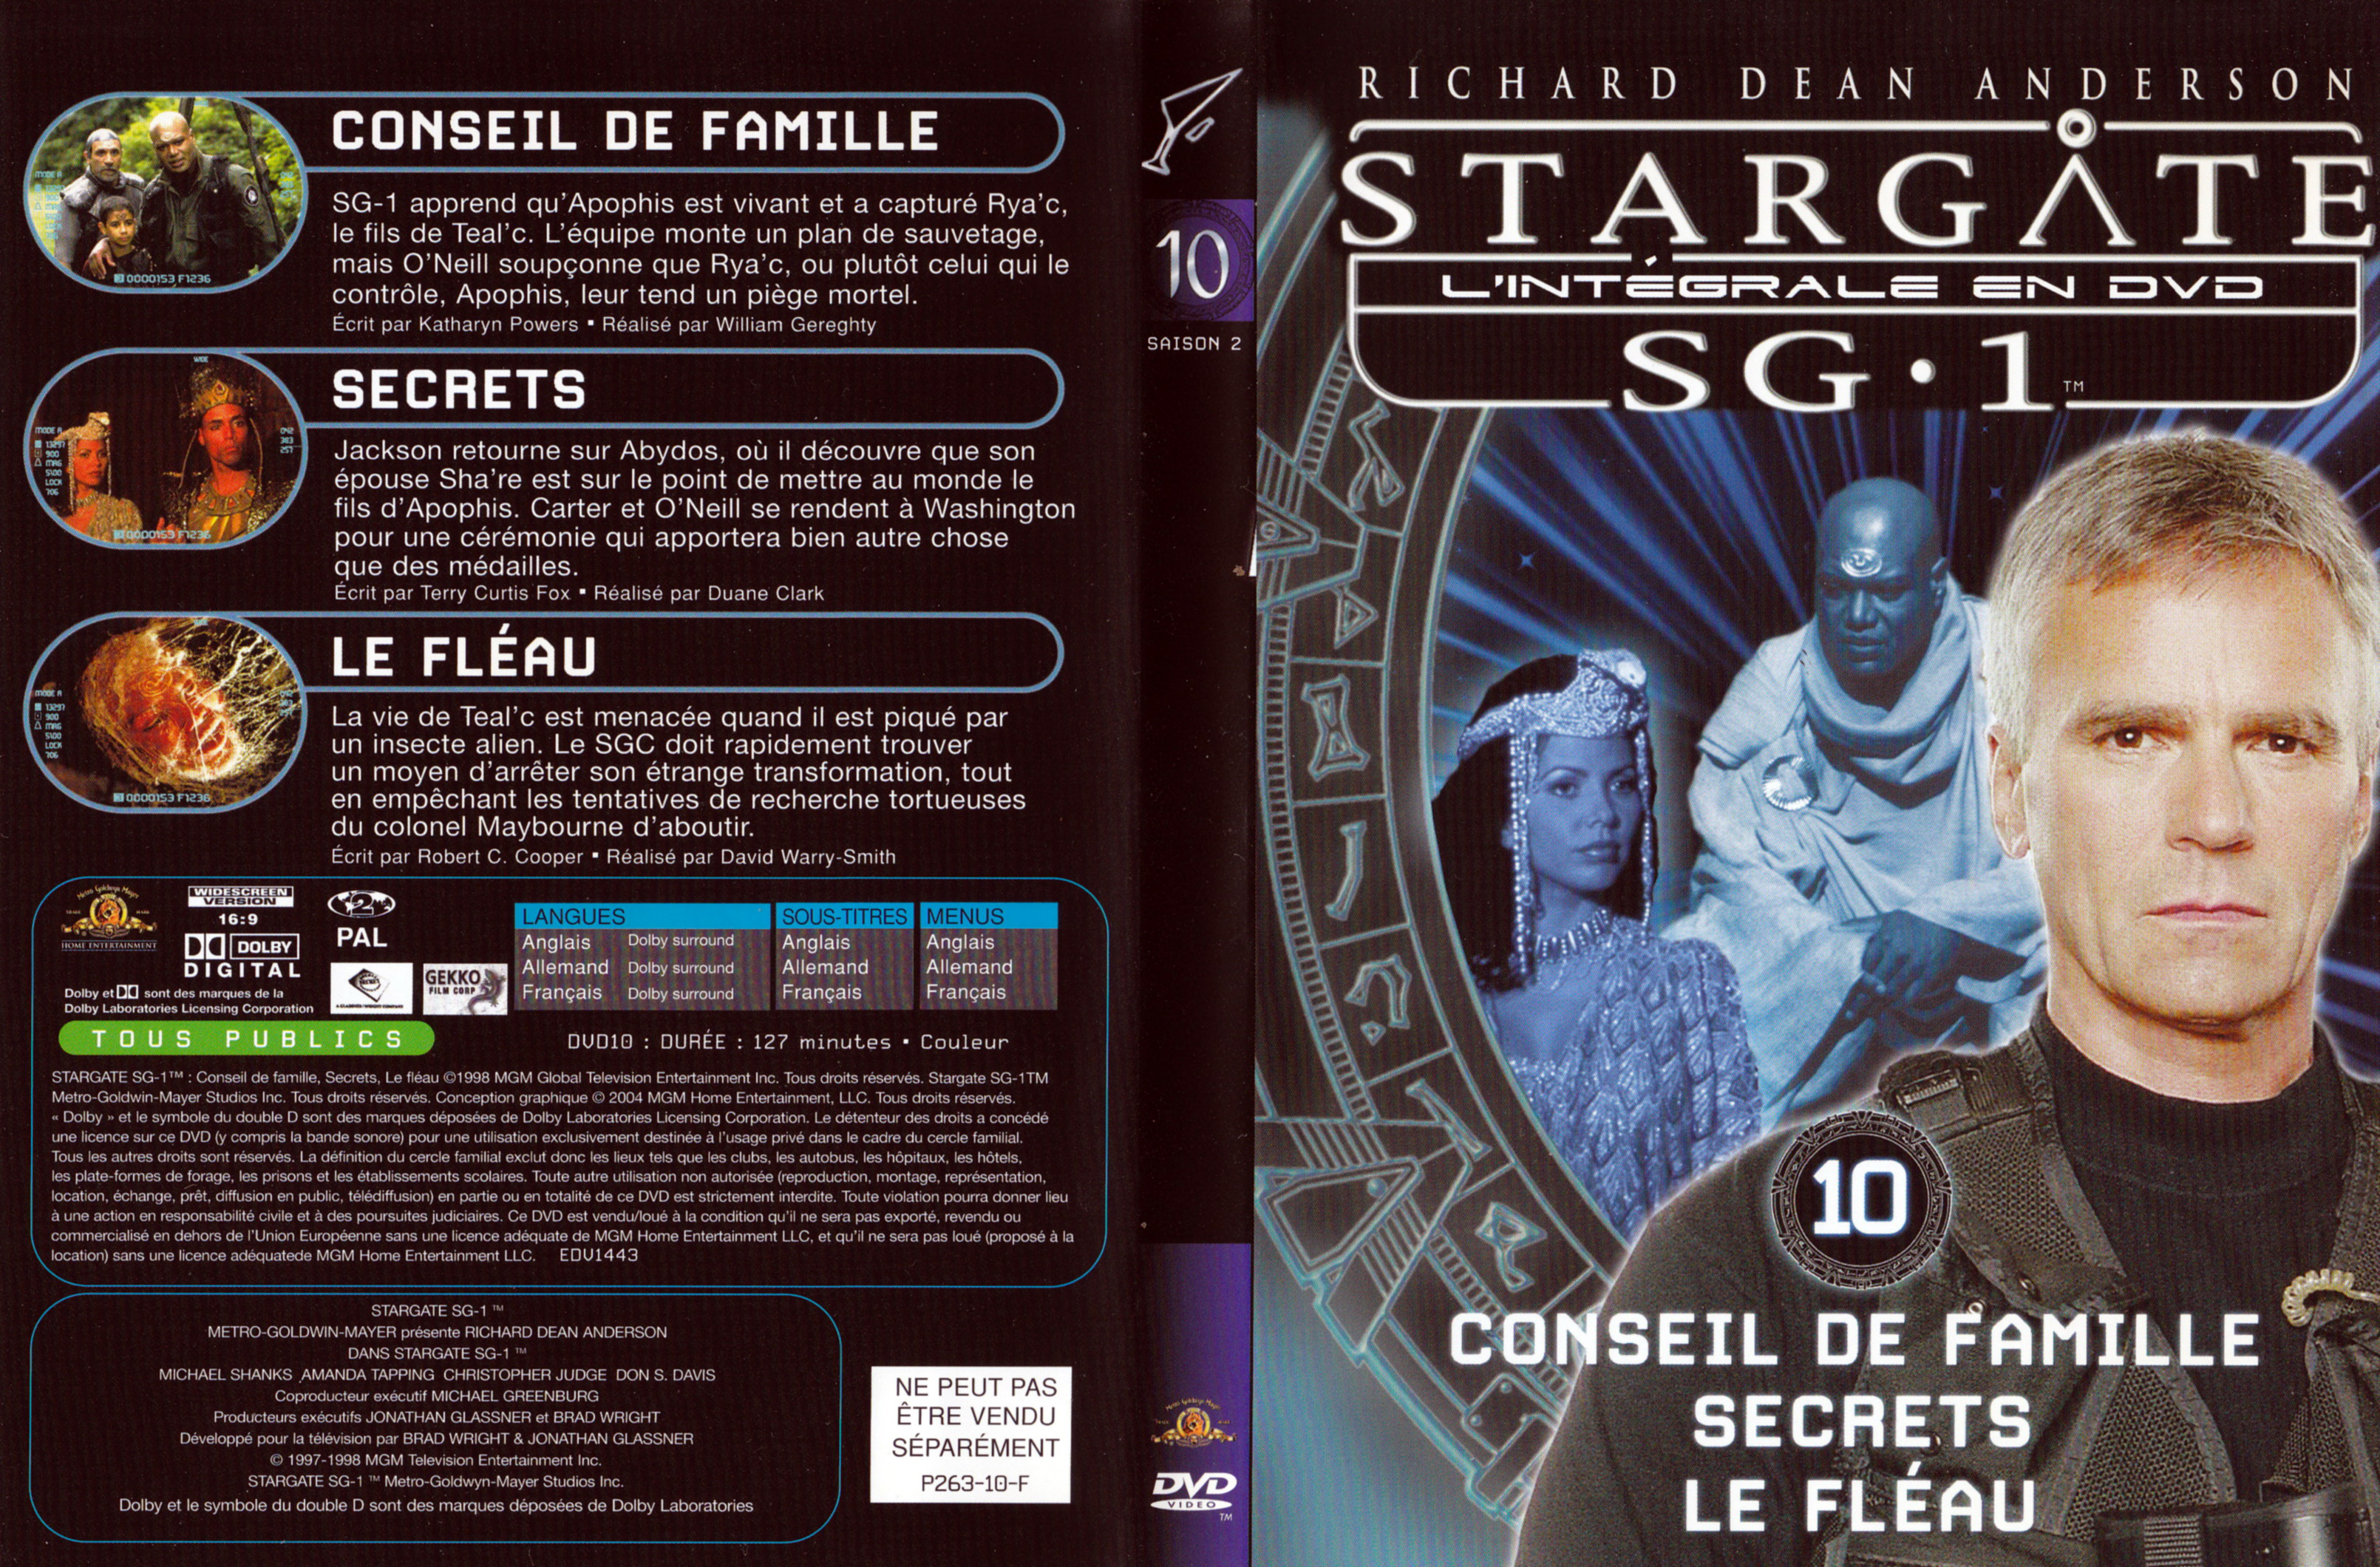 Jaquette DVD Stargate SG1 Intgrale Saison 2 vol 10